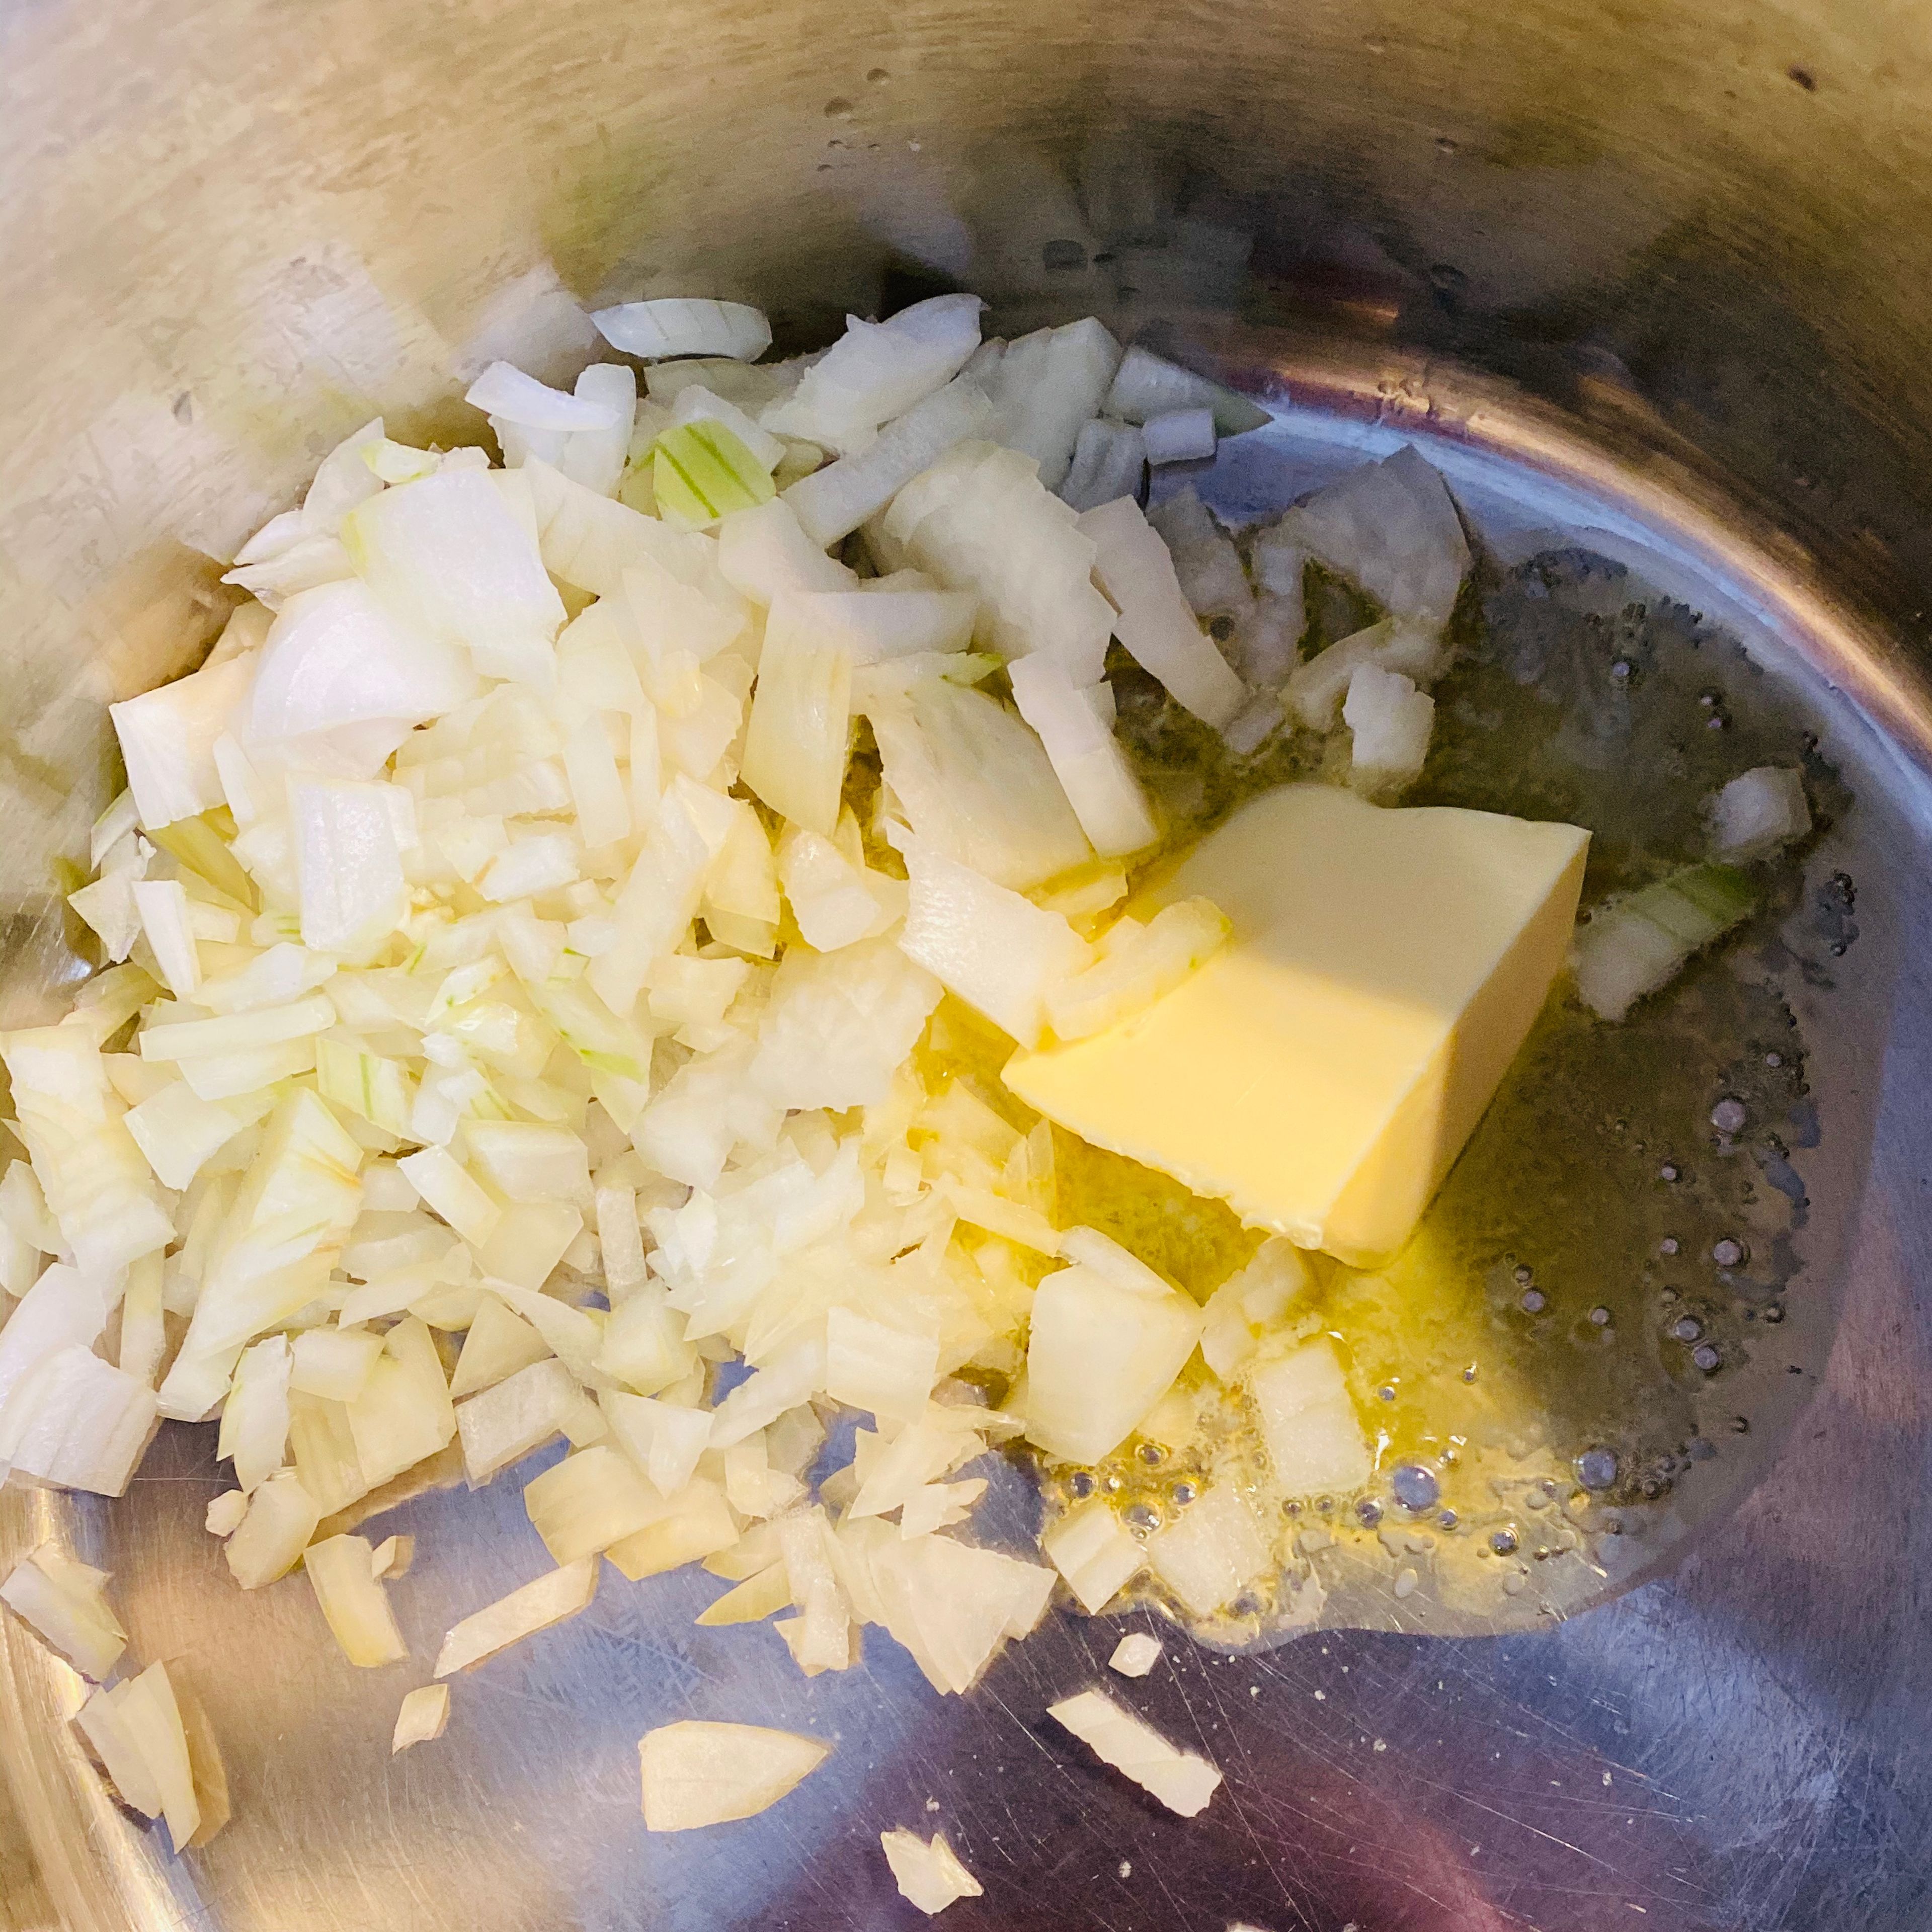 Zwiebel schälen, klein würfeln und zusammen mit der Butter im Topf glasig andünsten!